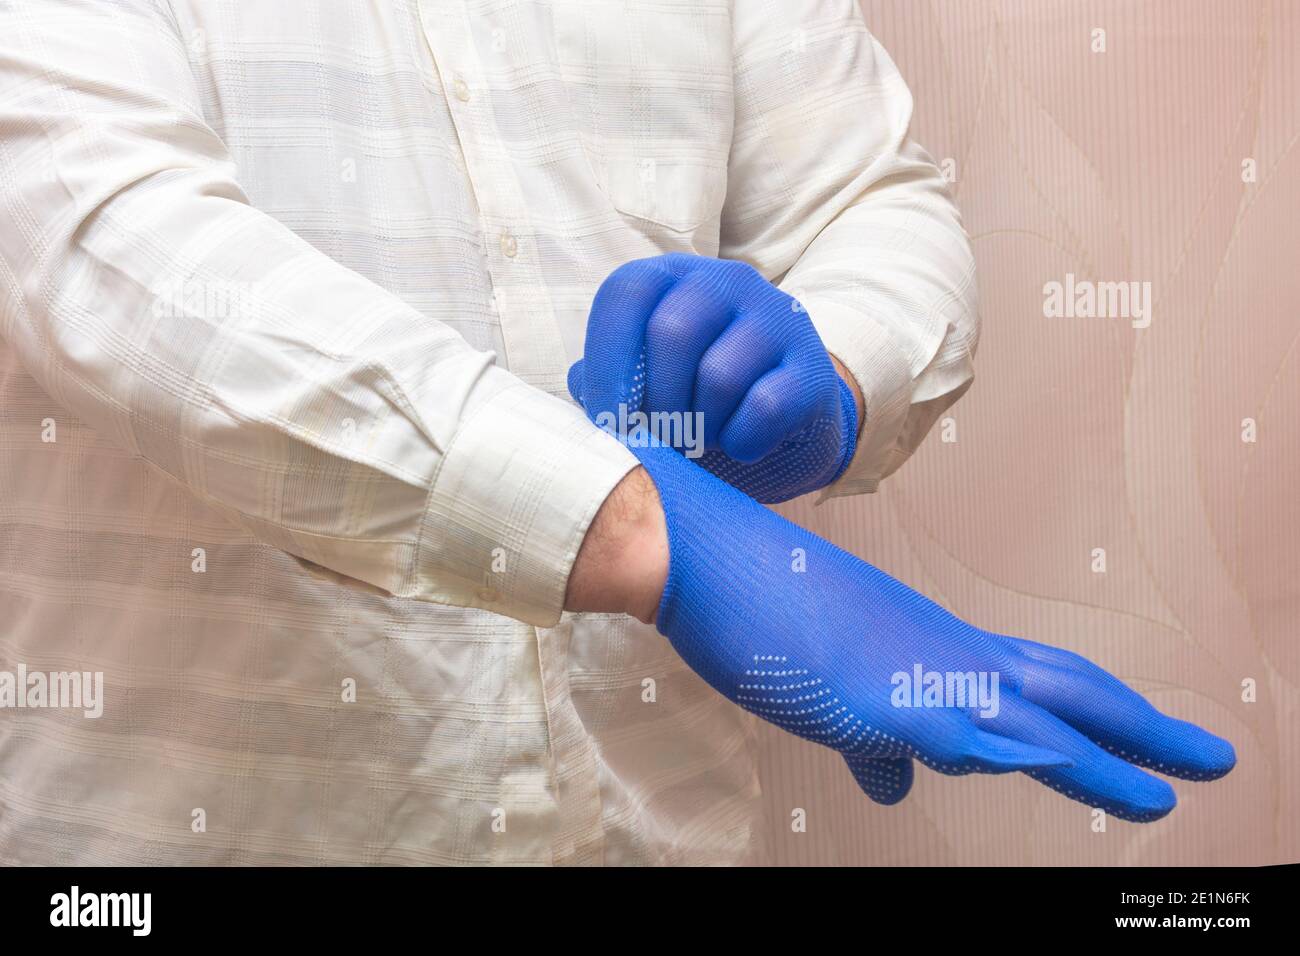 Homme met des gants en tissu bleu pour le travail. Concept de protection  des mains, protection de la santé Photo Stock - Alamy